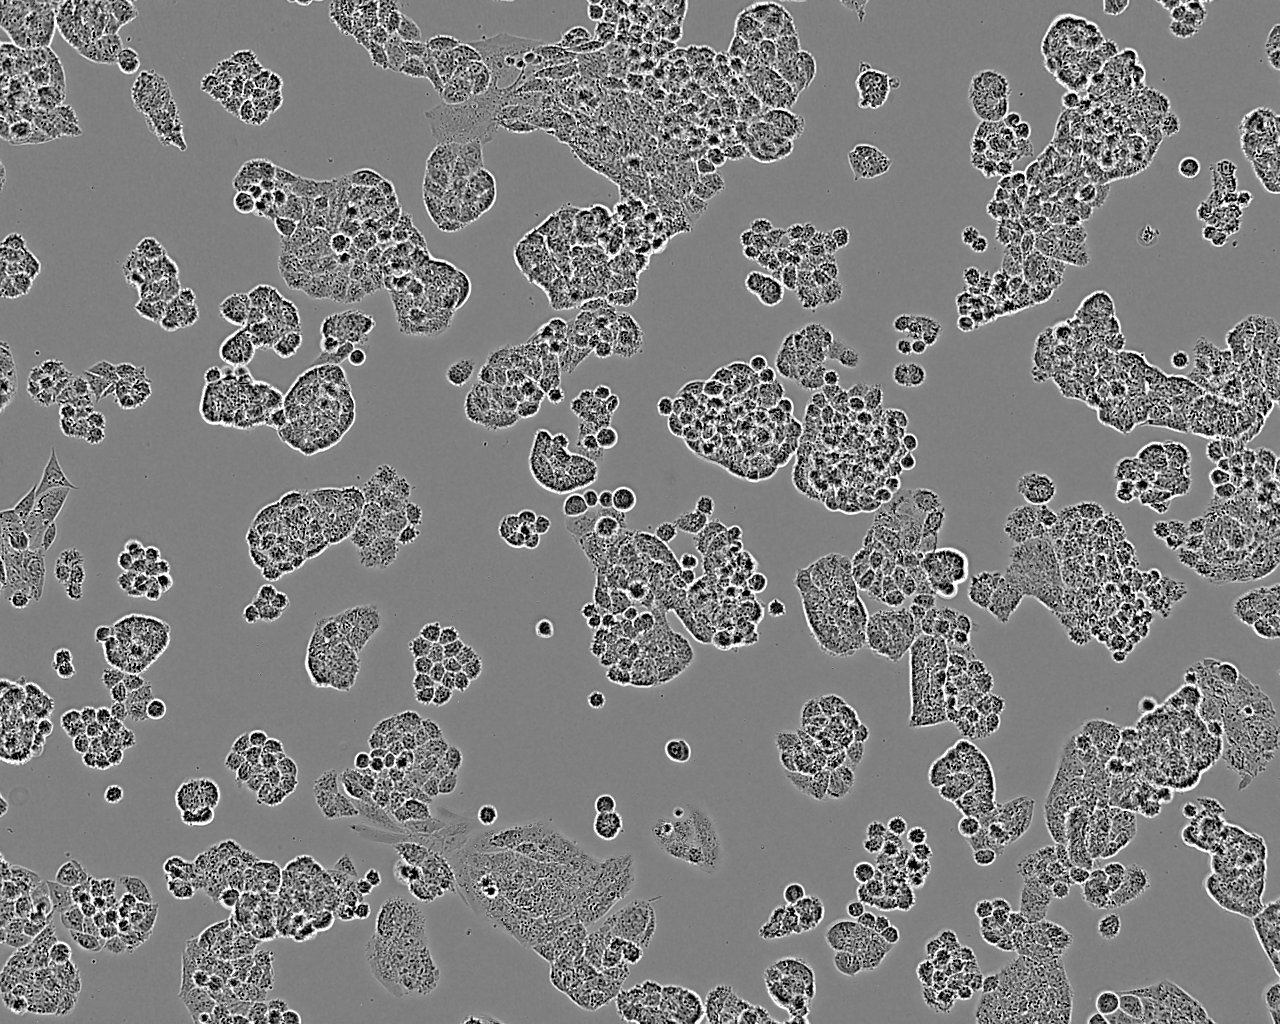 LA-795 epithelioid cells小鼠肺腺癌细胞系